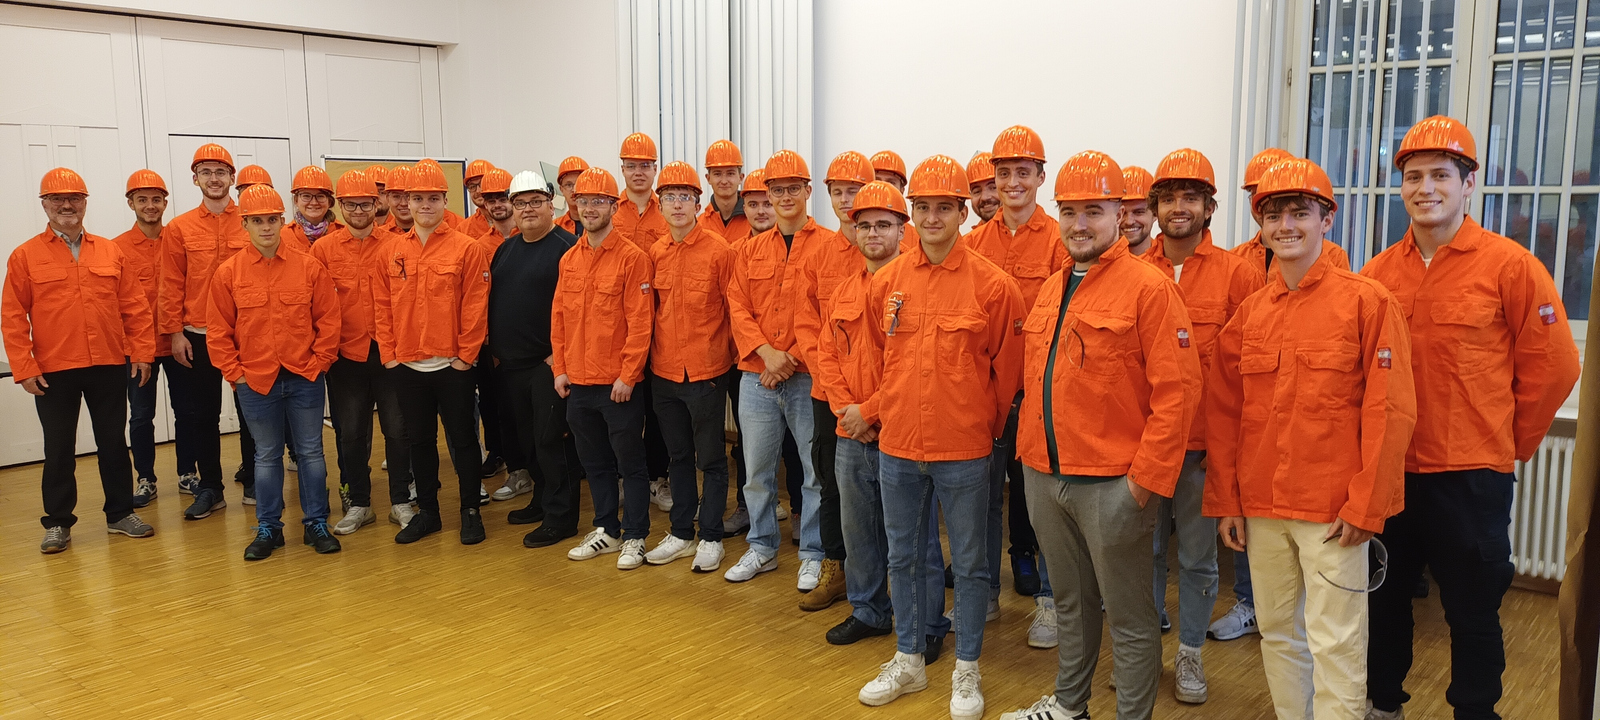 Gruppenfoto in orangefarbenen Arbeitsschutzjacken und mit orangefarbenen Helmen